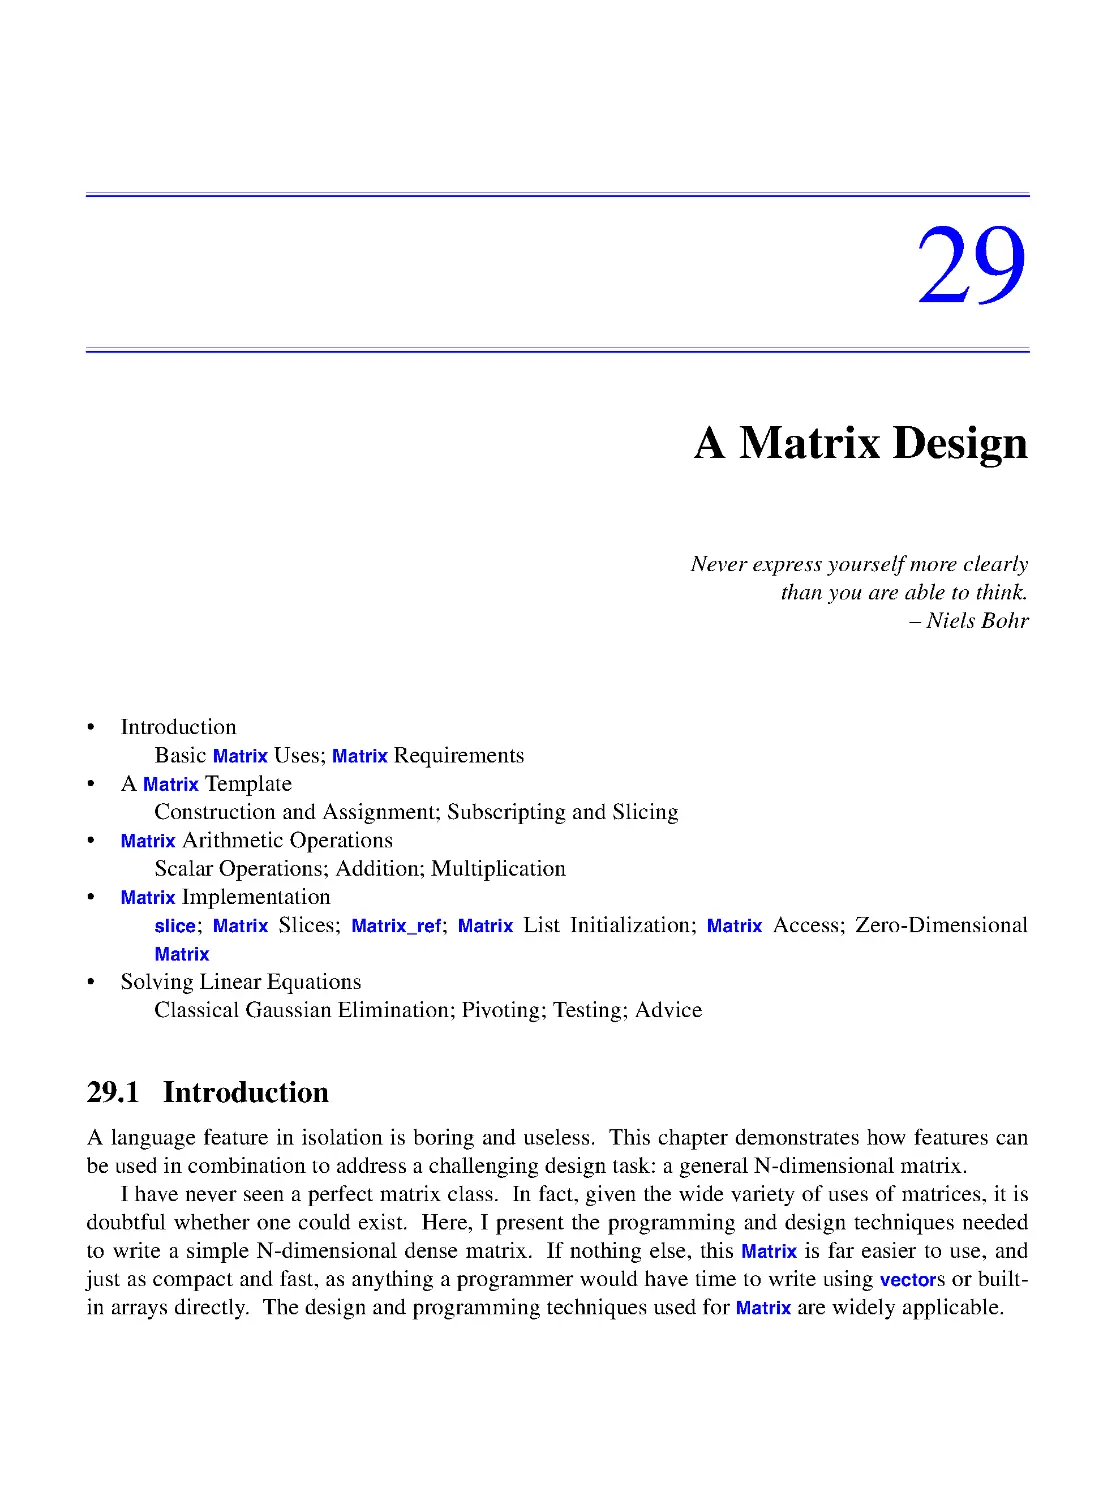 29. A Matrix Design